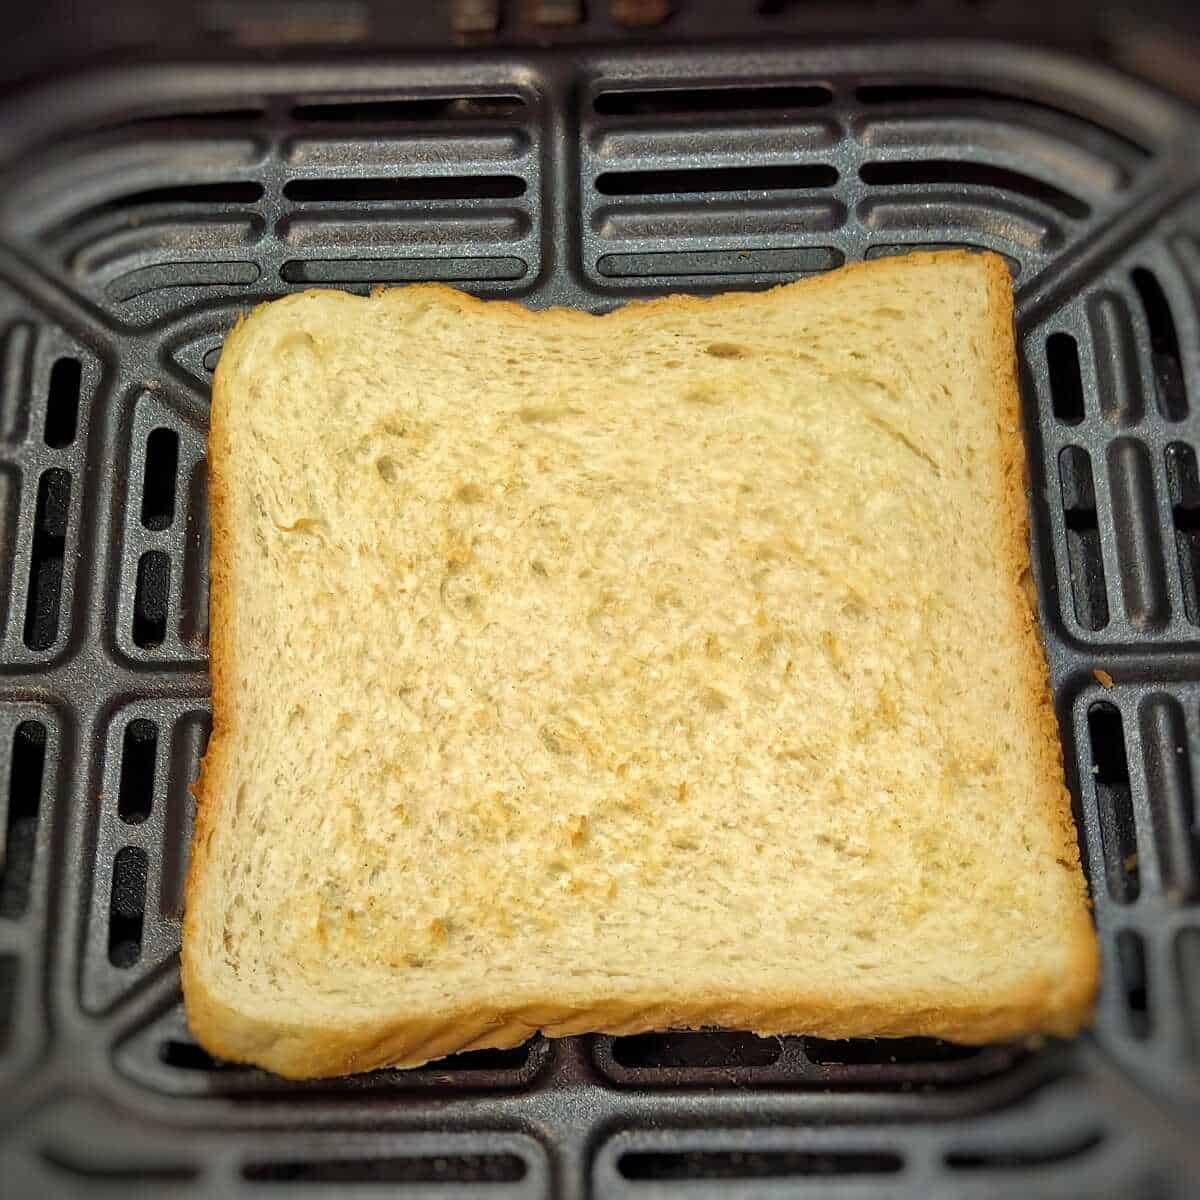 sliced bread in air fryer basket